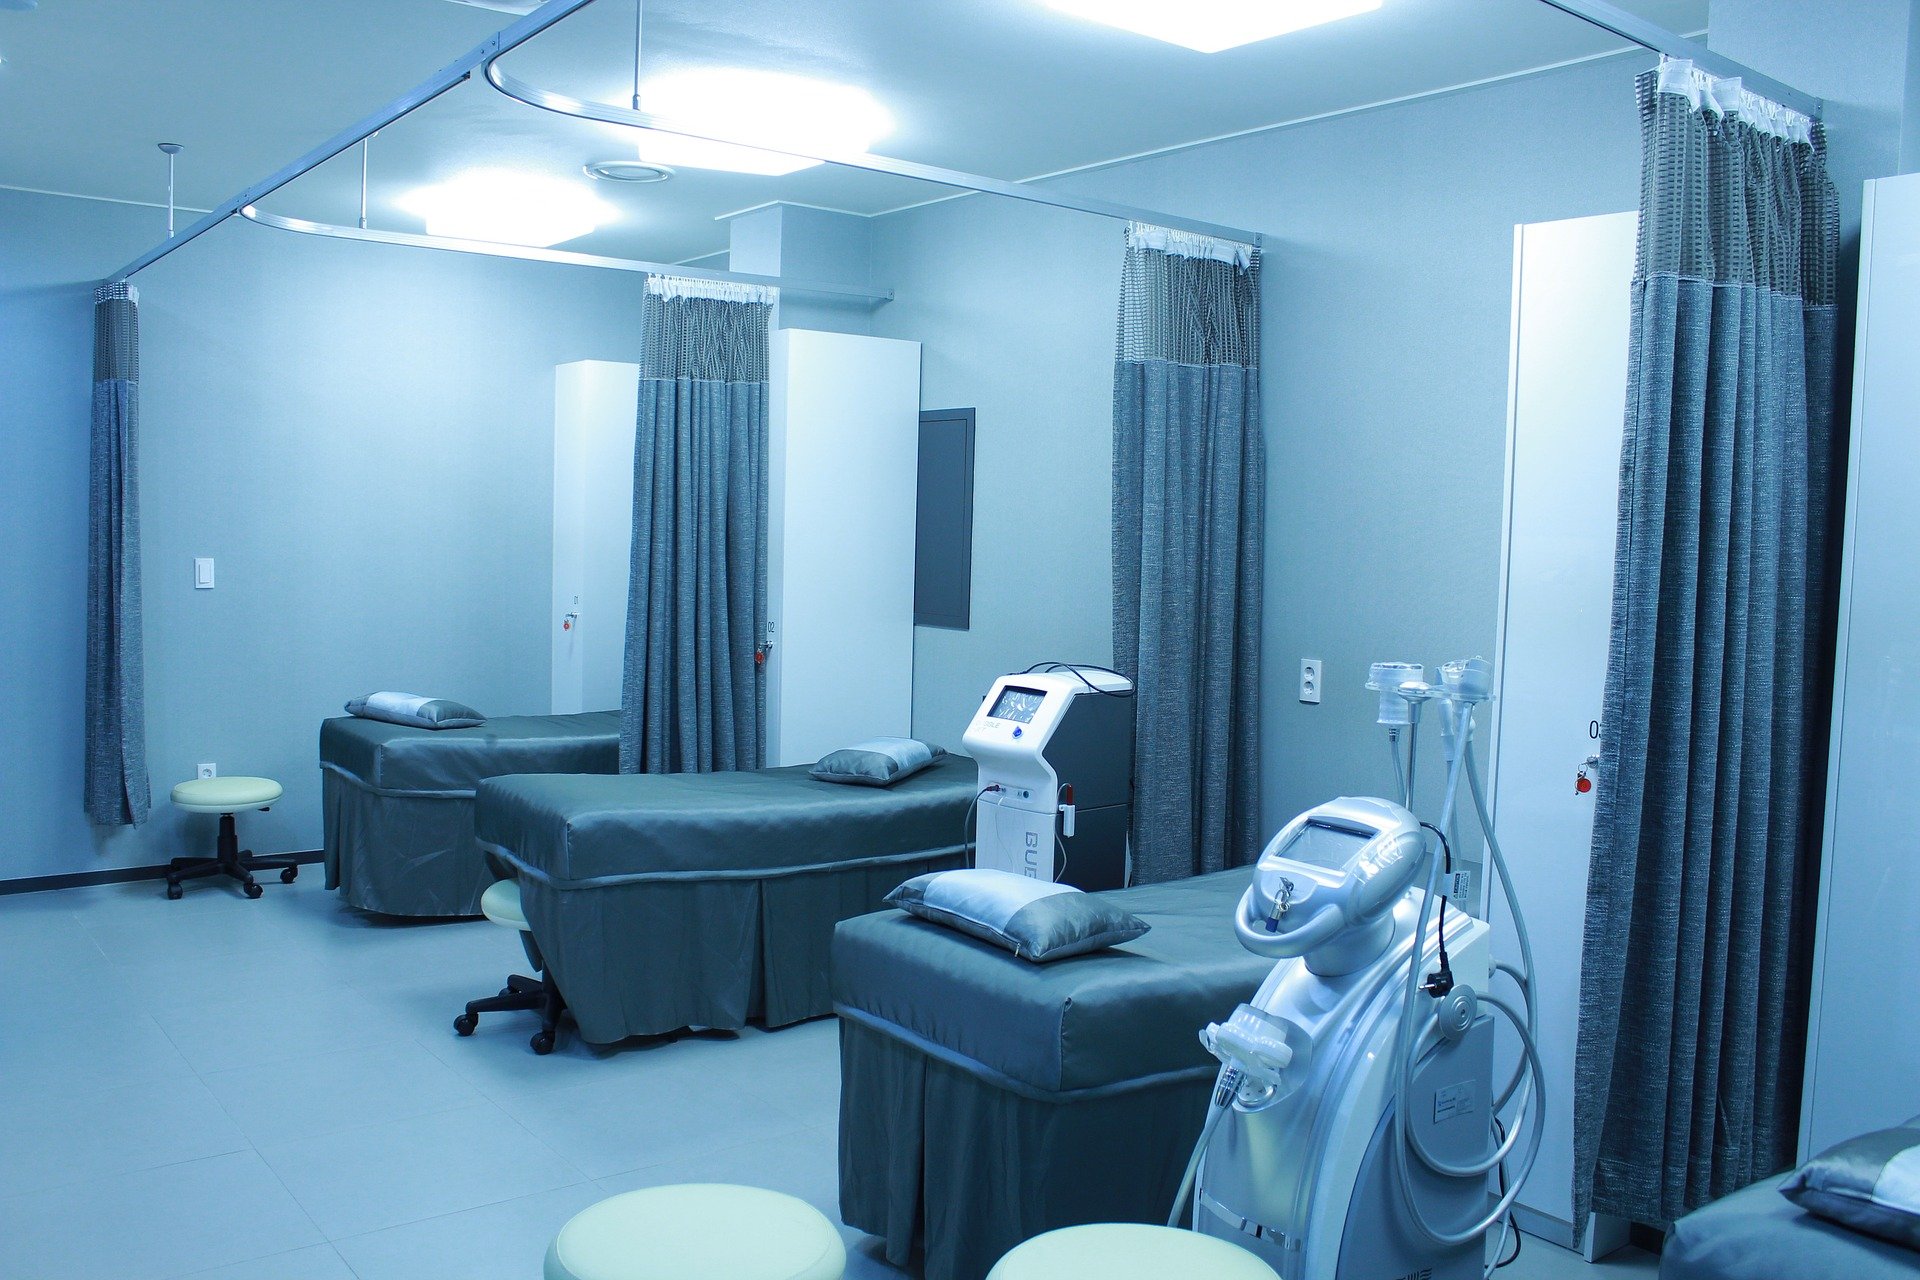 Krankenhaus (Foto: Pixabay.com)